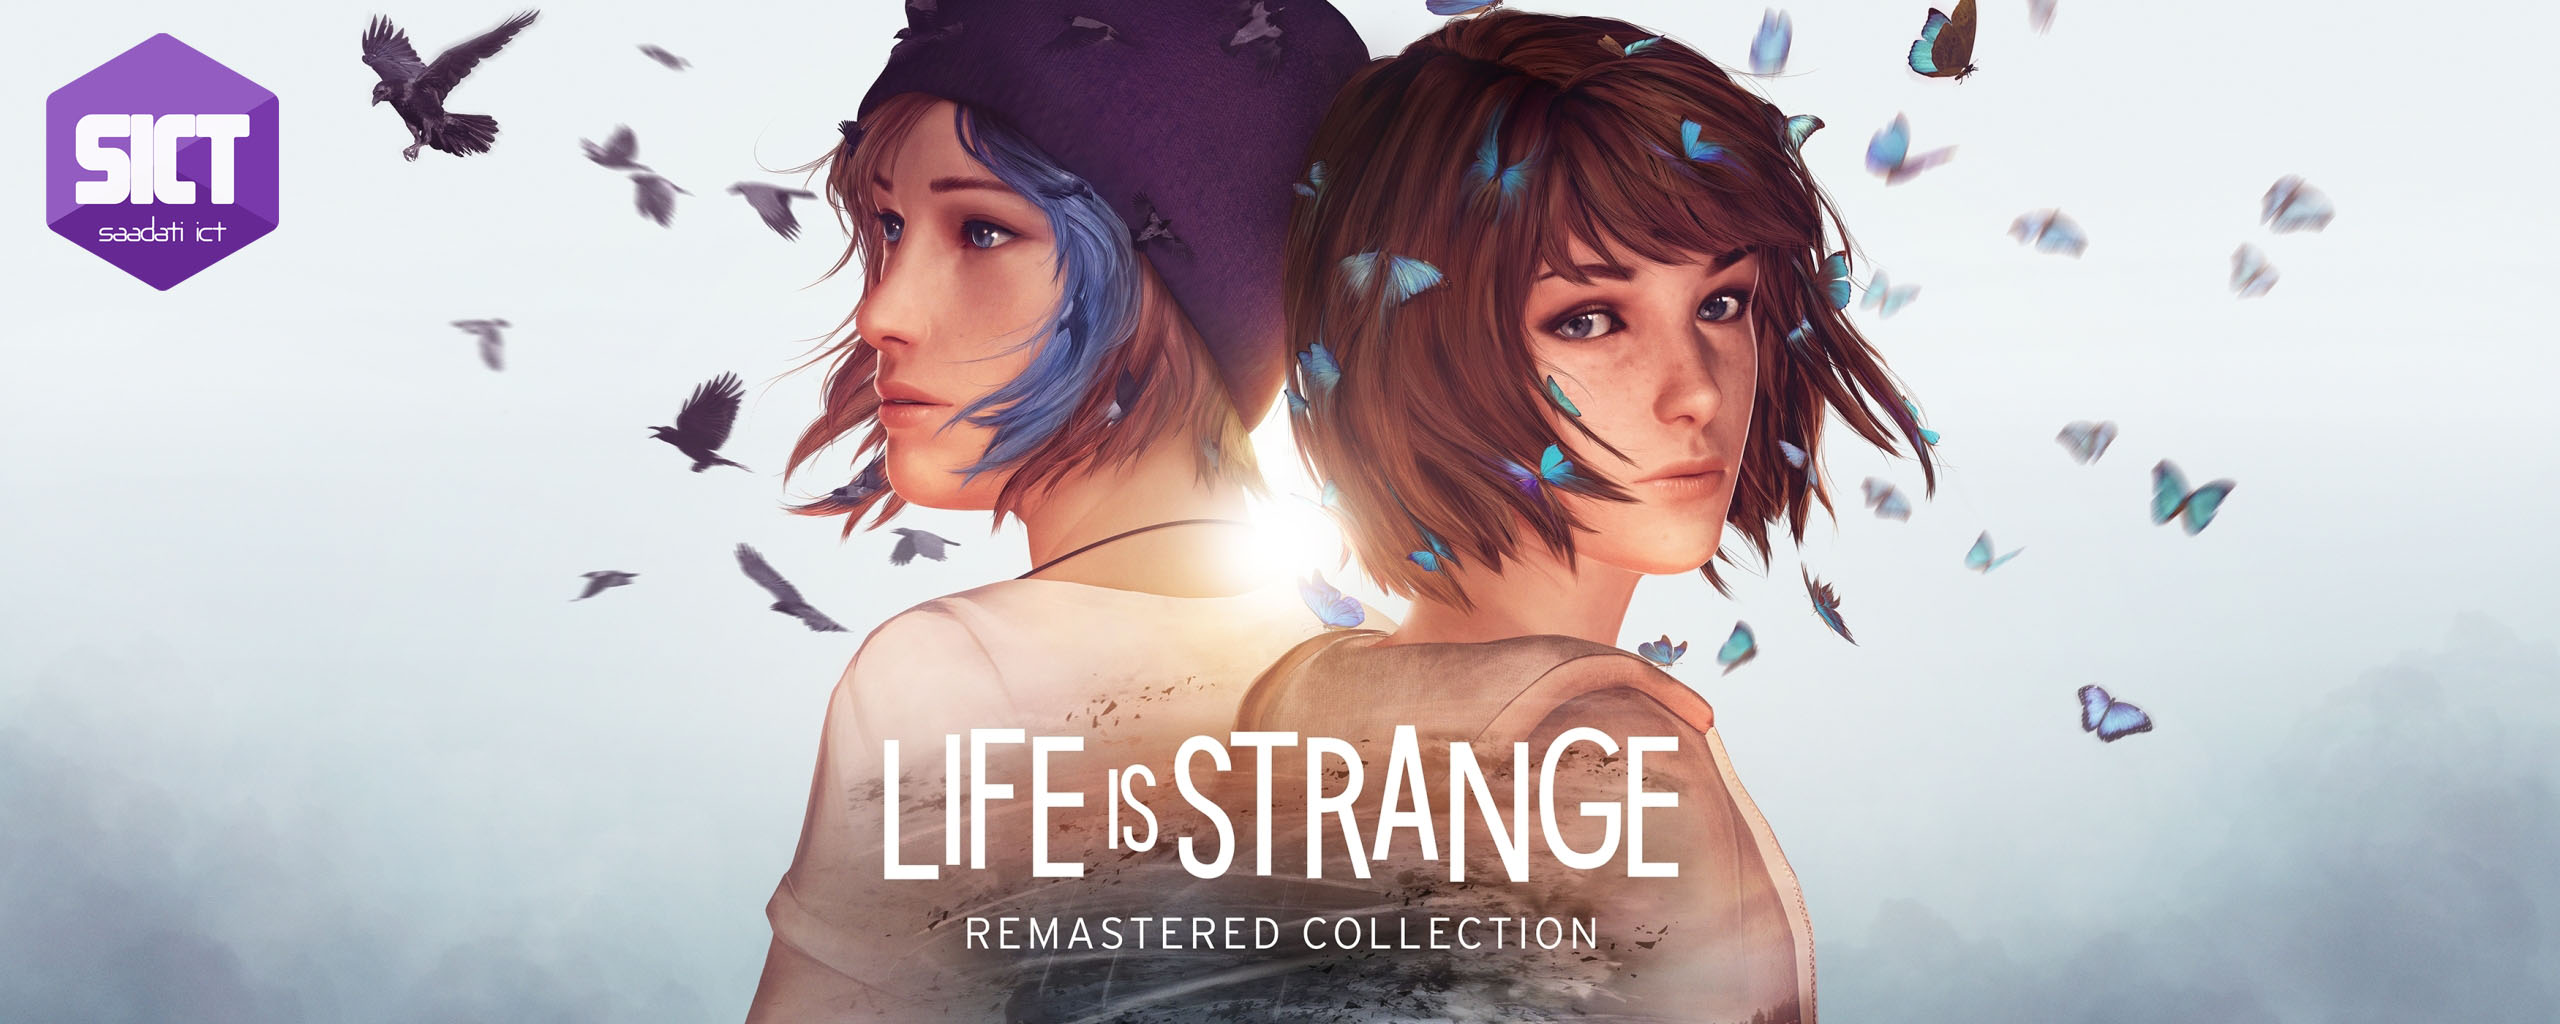 تریلر گیم پلی Life is Strange Remastered منتشر شد